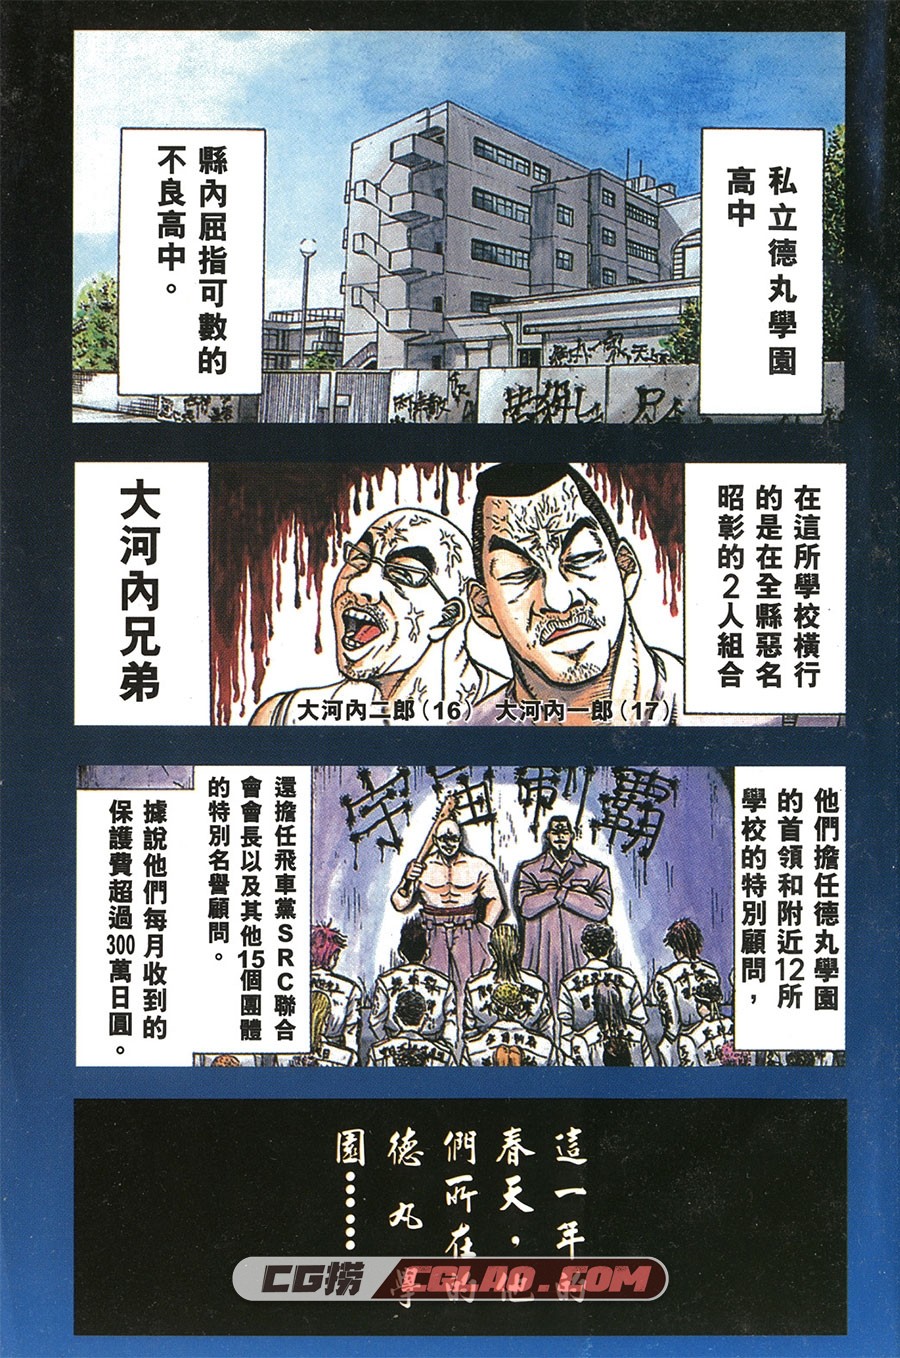 史上最不幸的大佬三郎 阿部秀司 1-26卷 漫画完结下载 百度云,T01_001.jpg